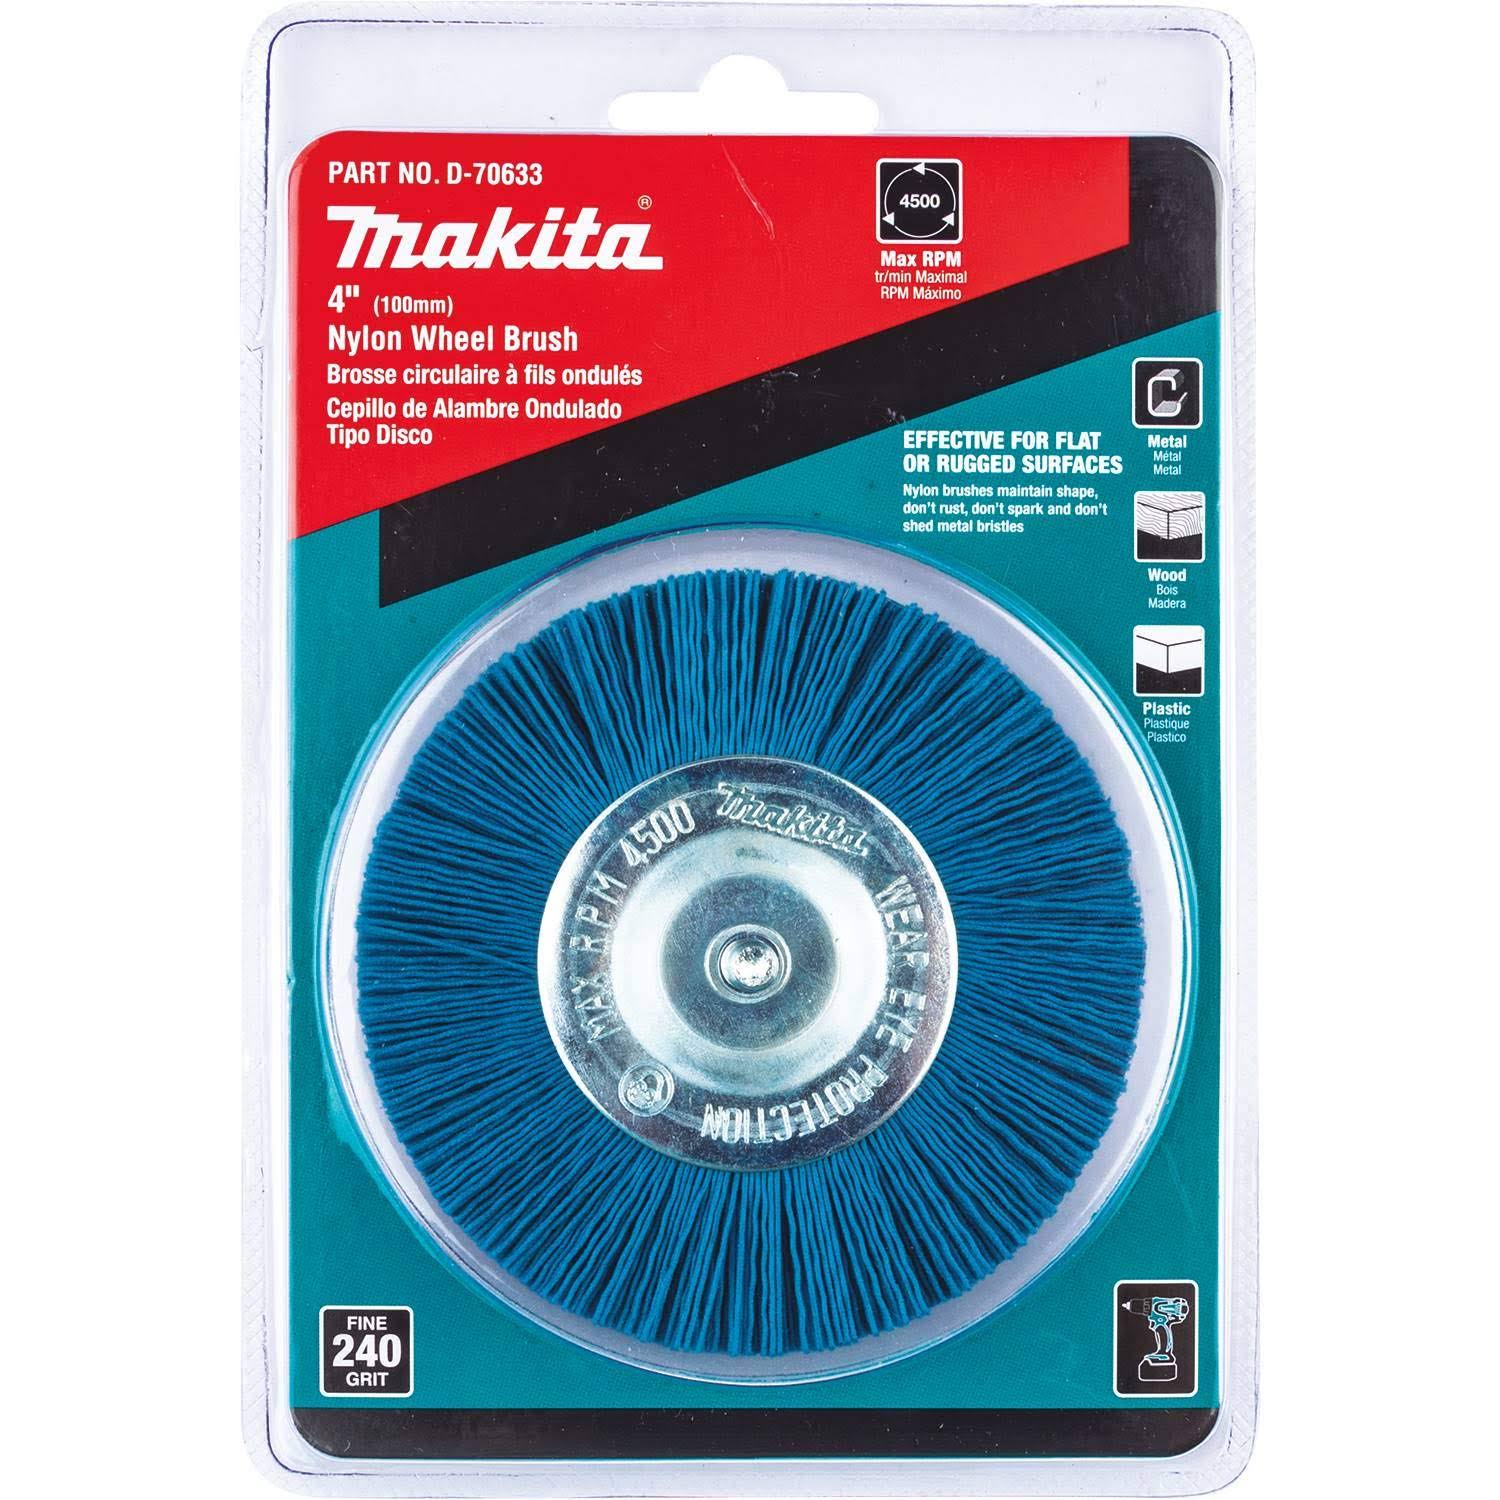 Makita D-70633 4" Nylon Wheel Brush, Fine, 240 Grit